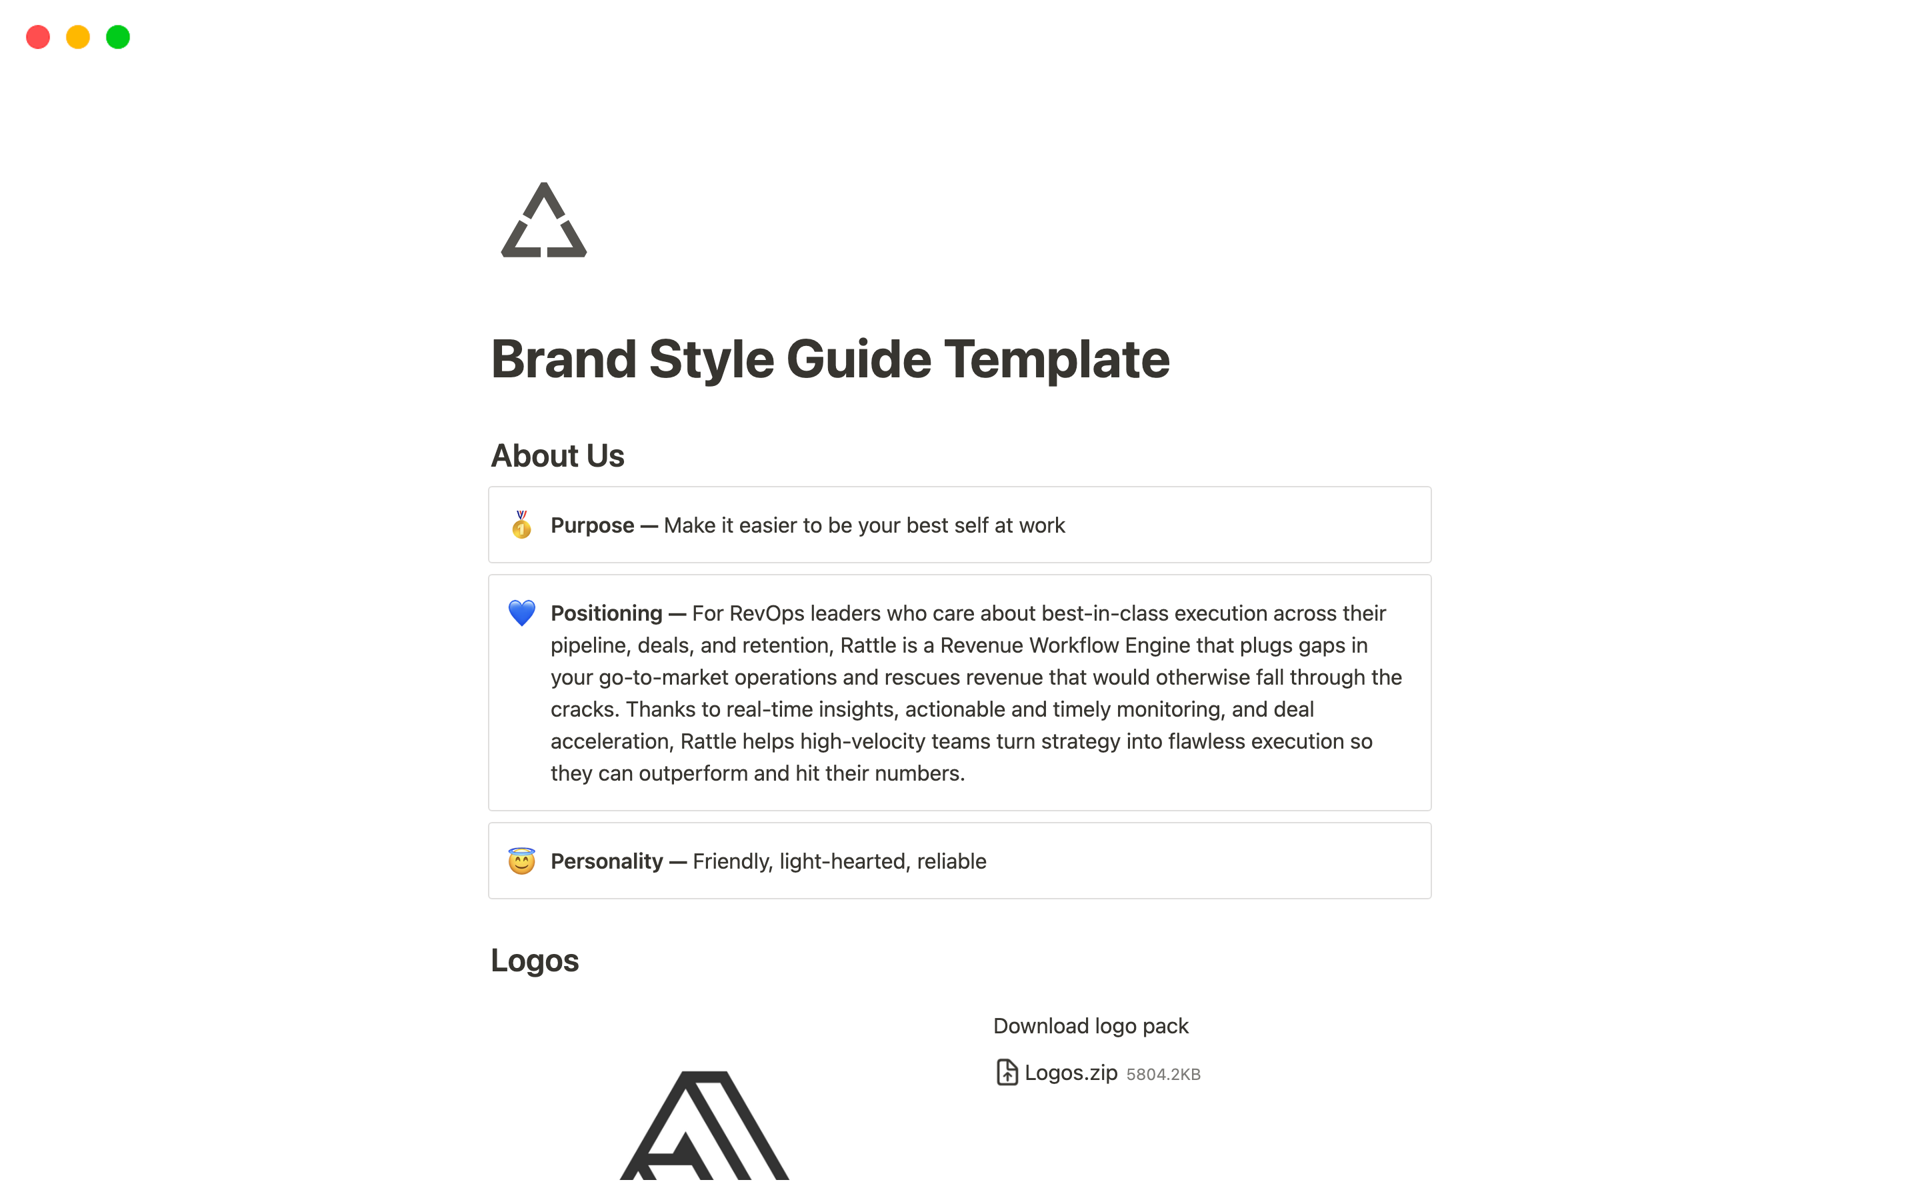 Uma prévia do modelo para Brand Style Guide